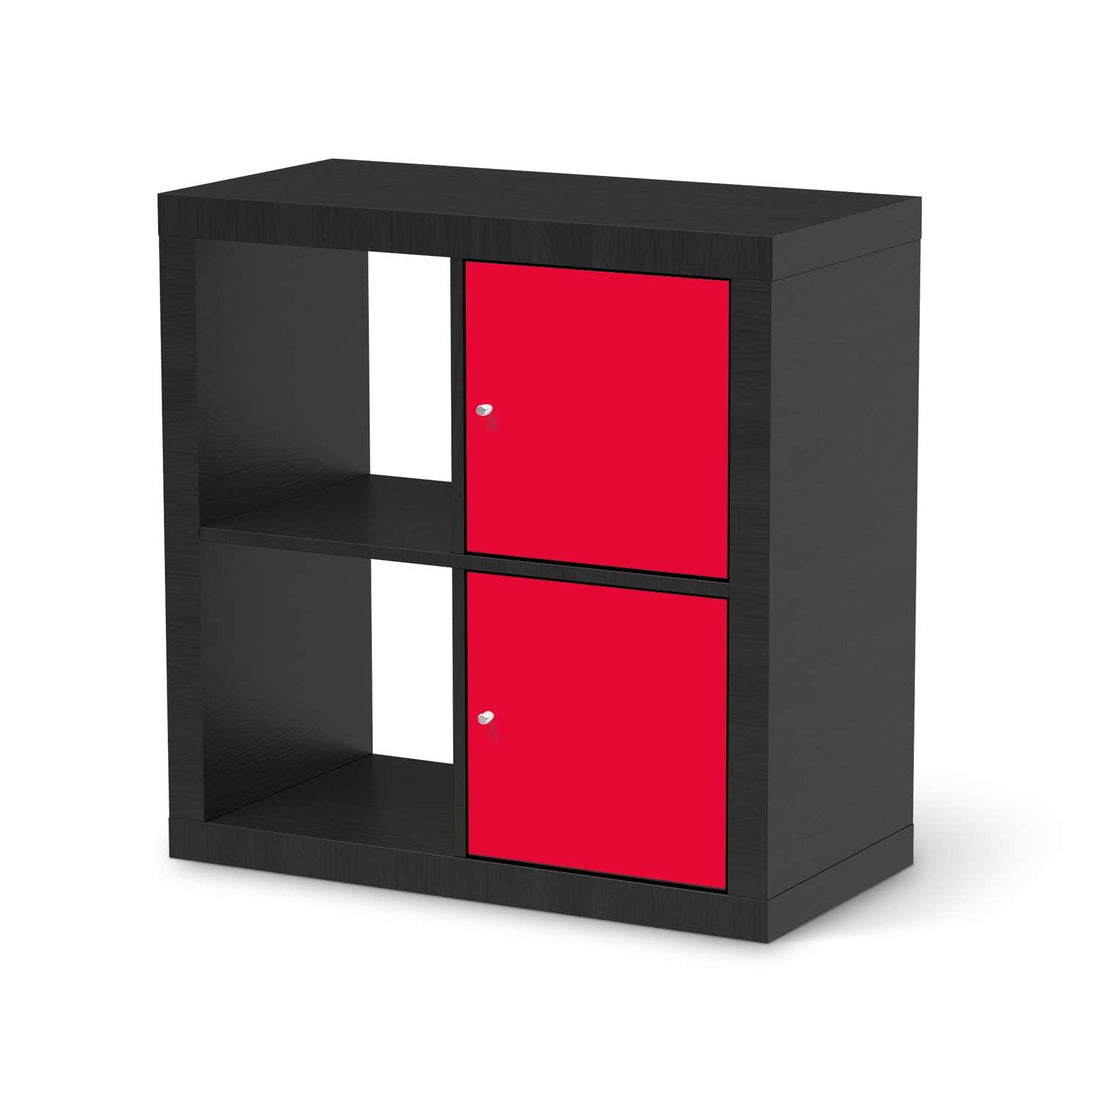 Klebefolie für Möbel Rot Light - IKEA Expedit Regal 2 Türen Hoch - schwarz